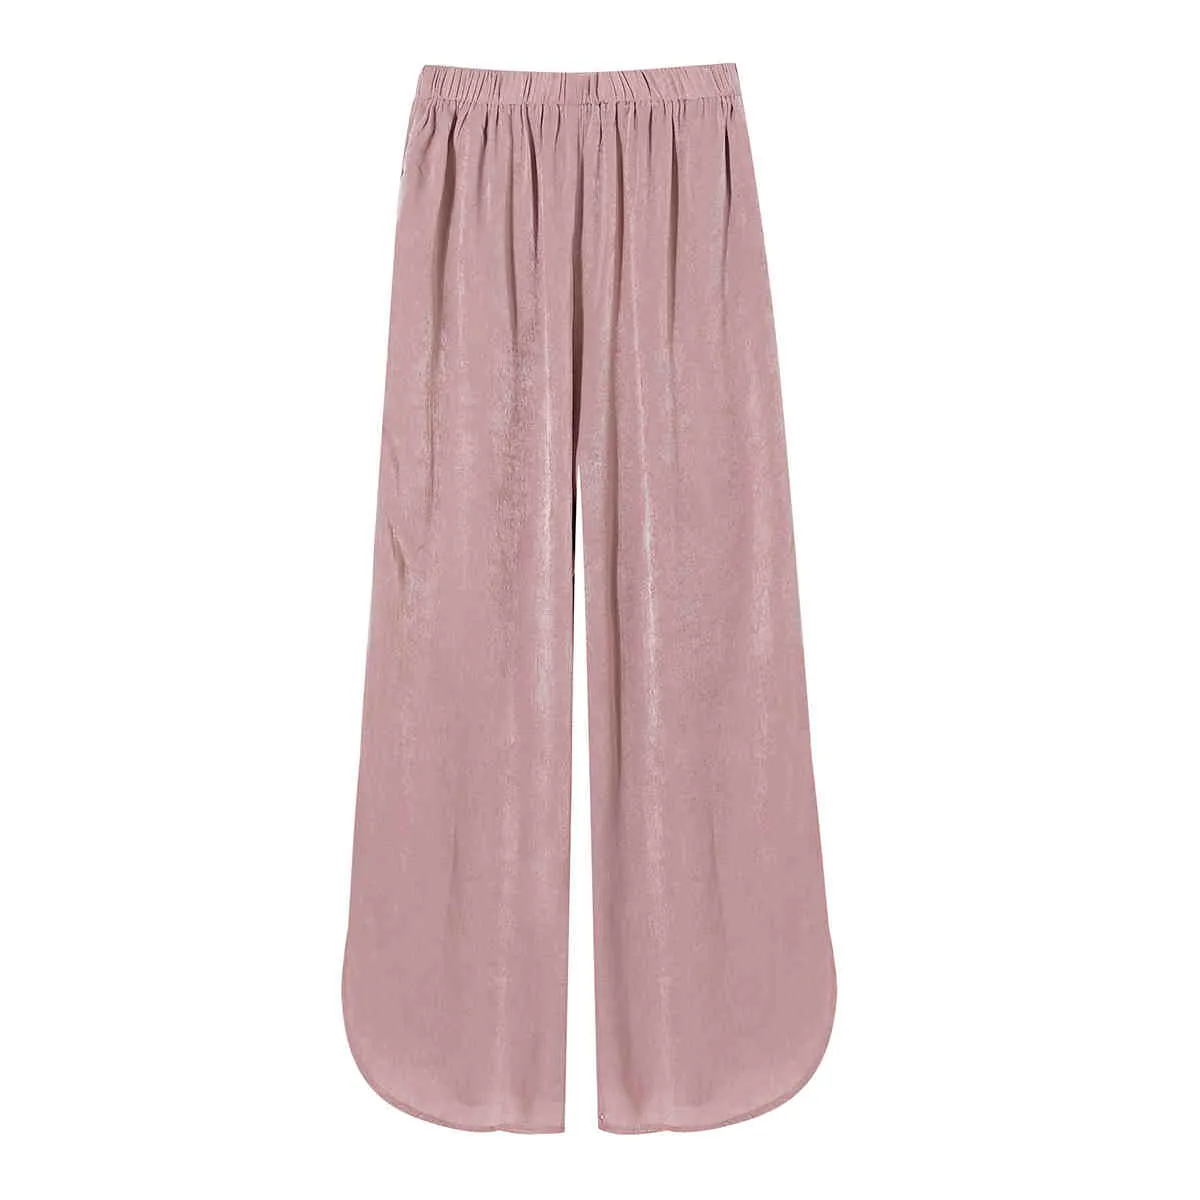 Mode die glänzend rosa breite bein hosen Frauen elastische hohe taille hose weibliche Sommer strand lose palazzo 210430